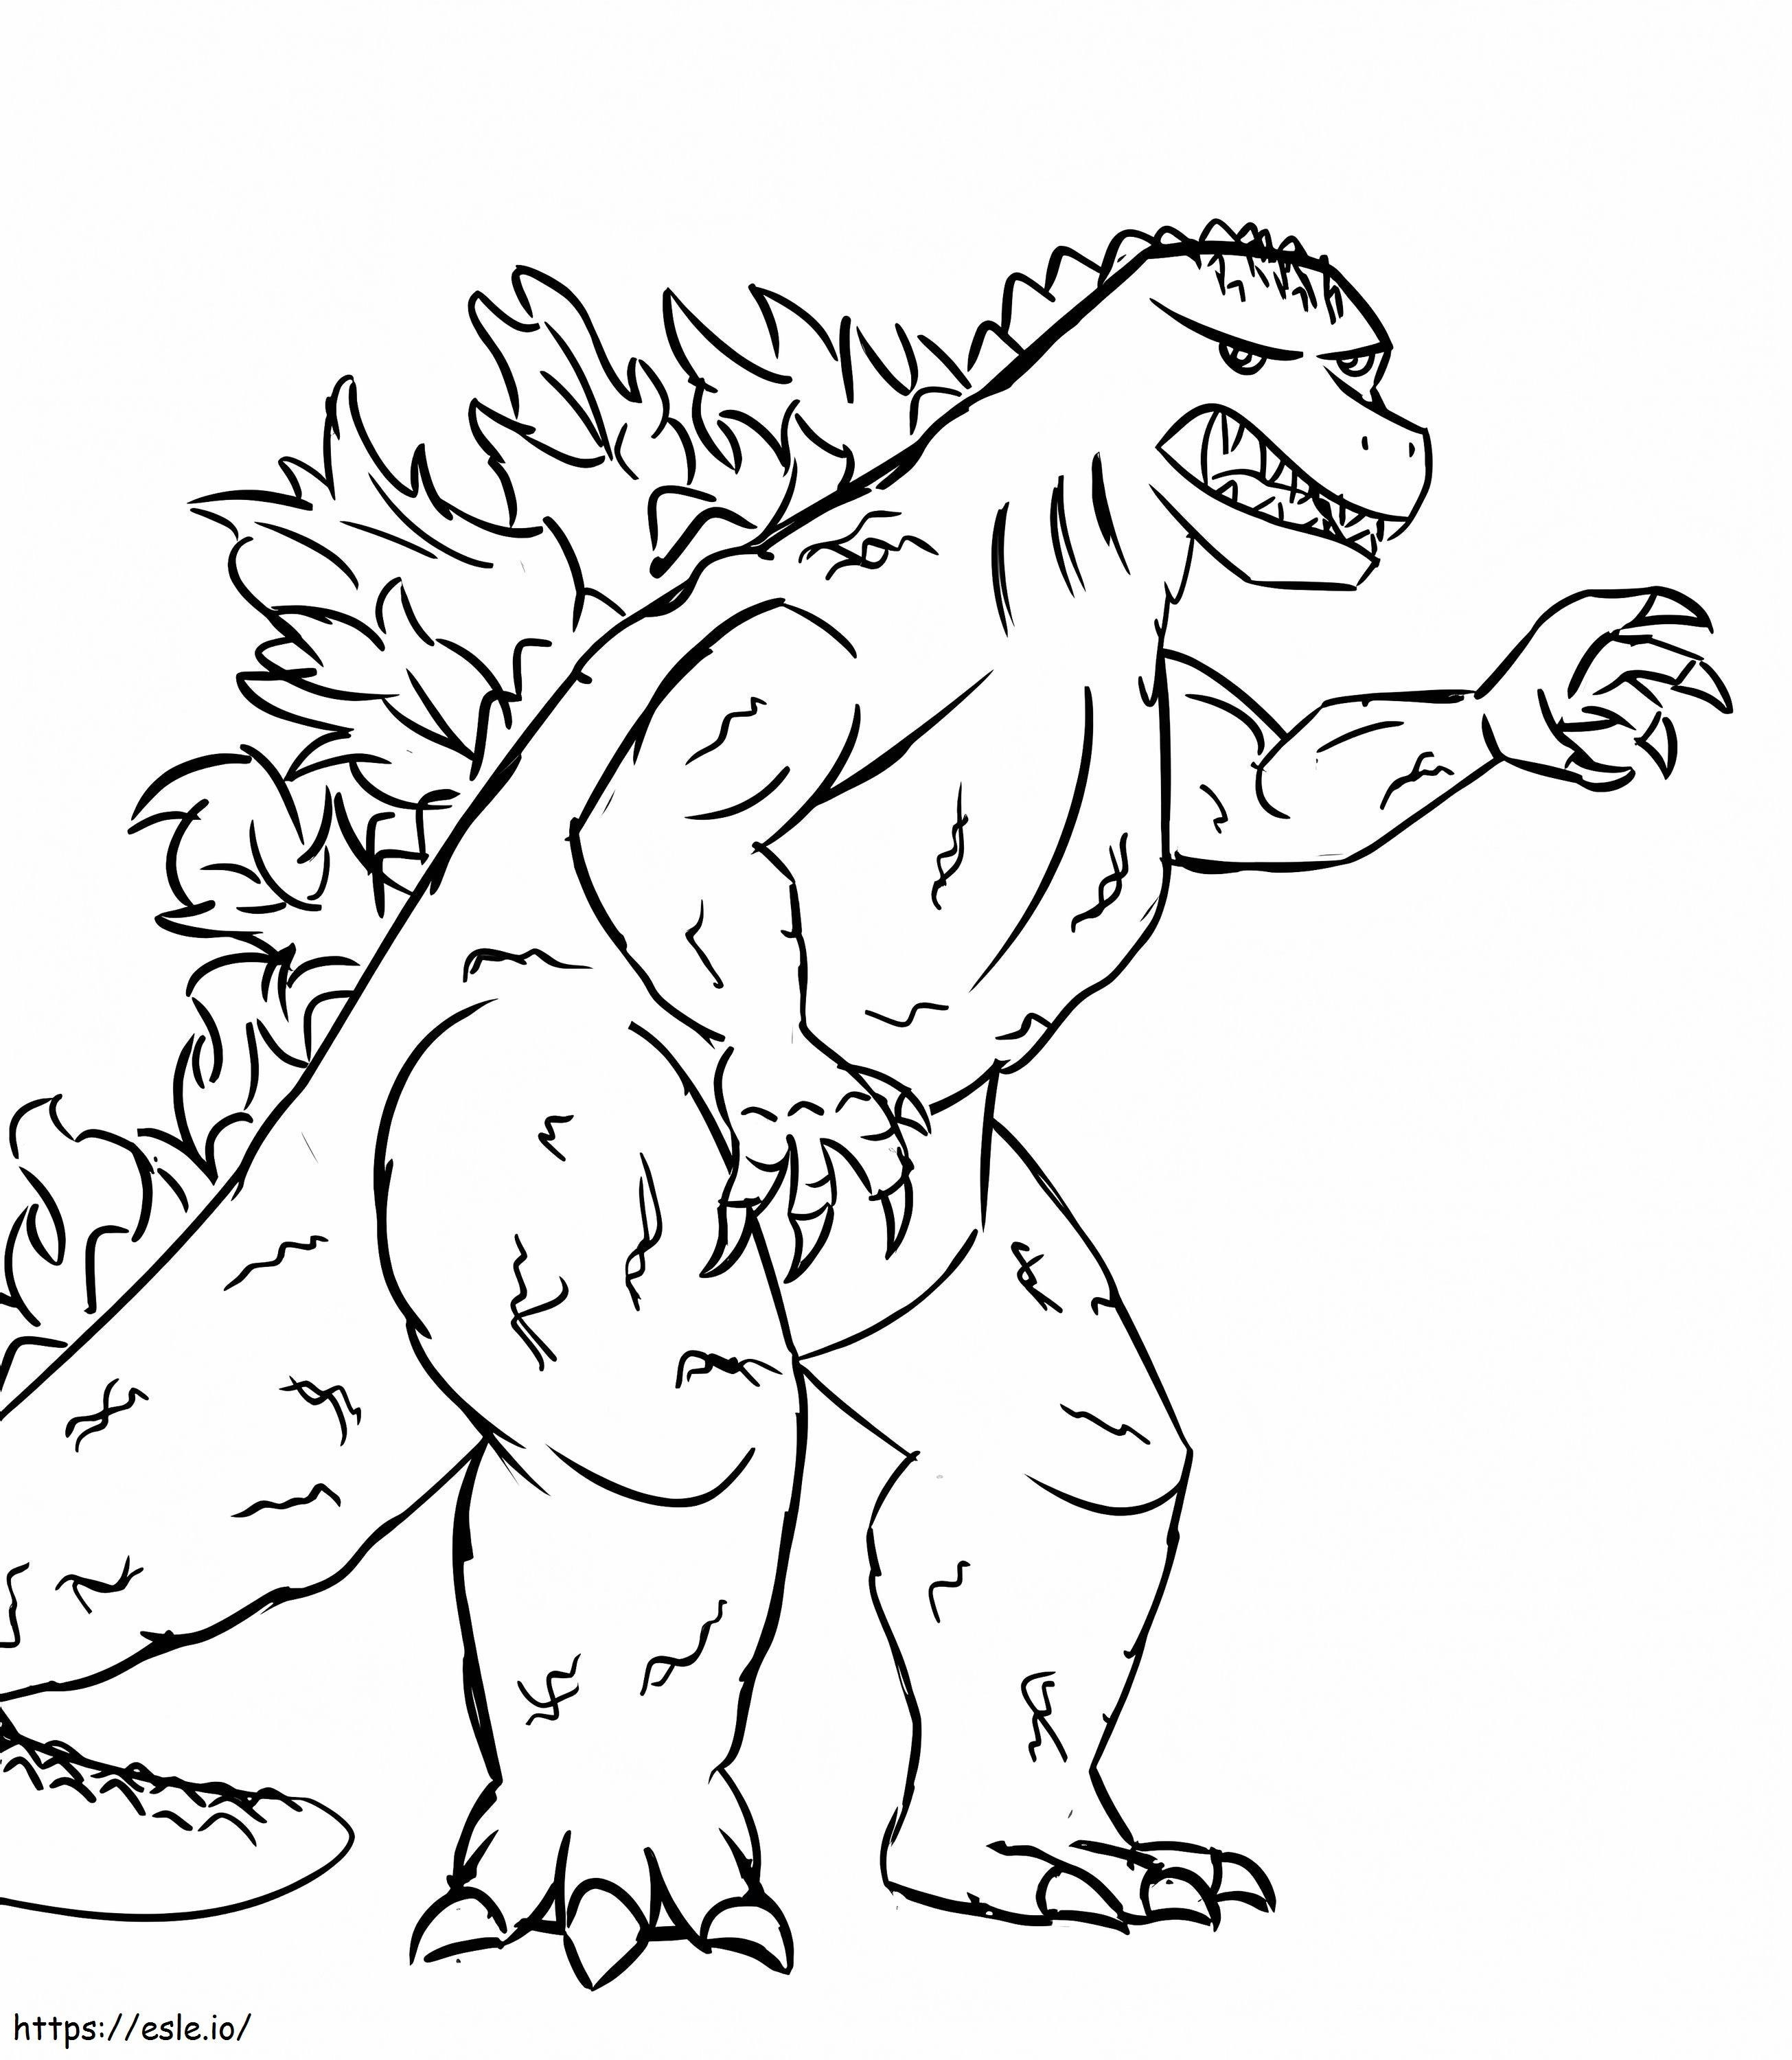 Güzel Kızgın Godzilla boyama